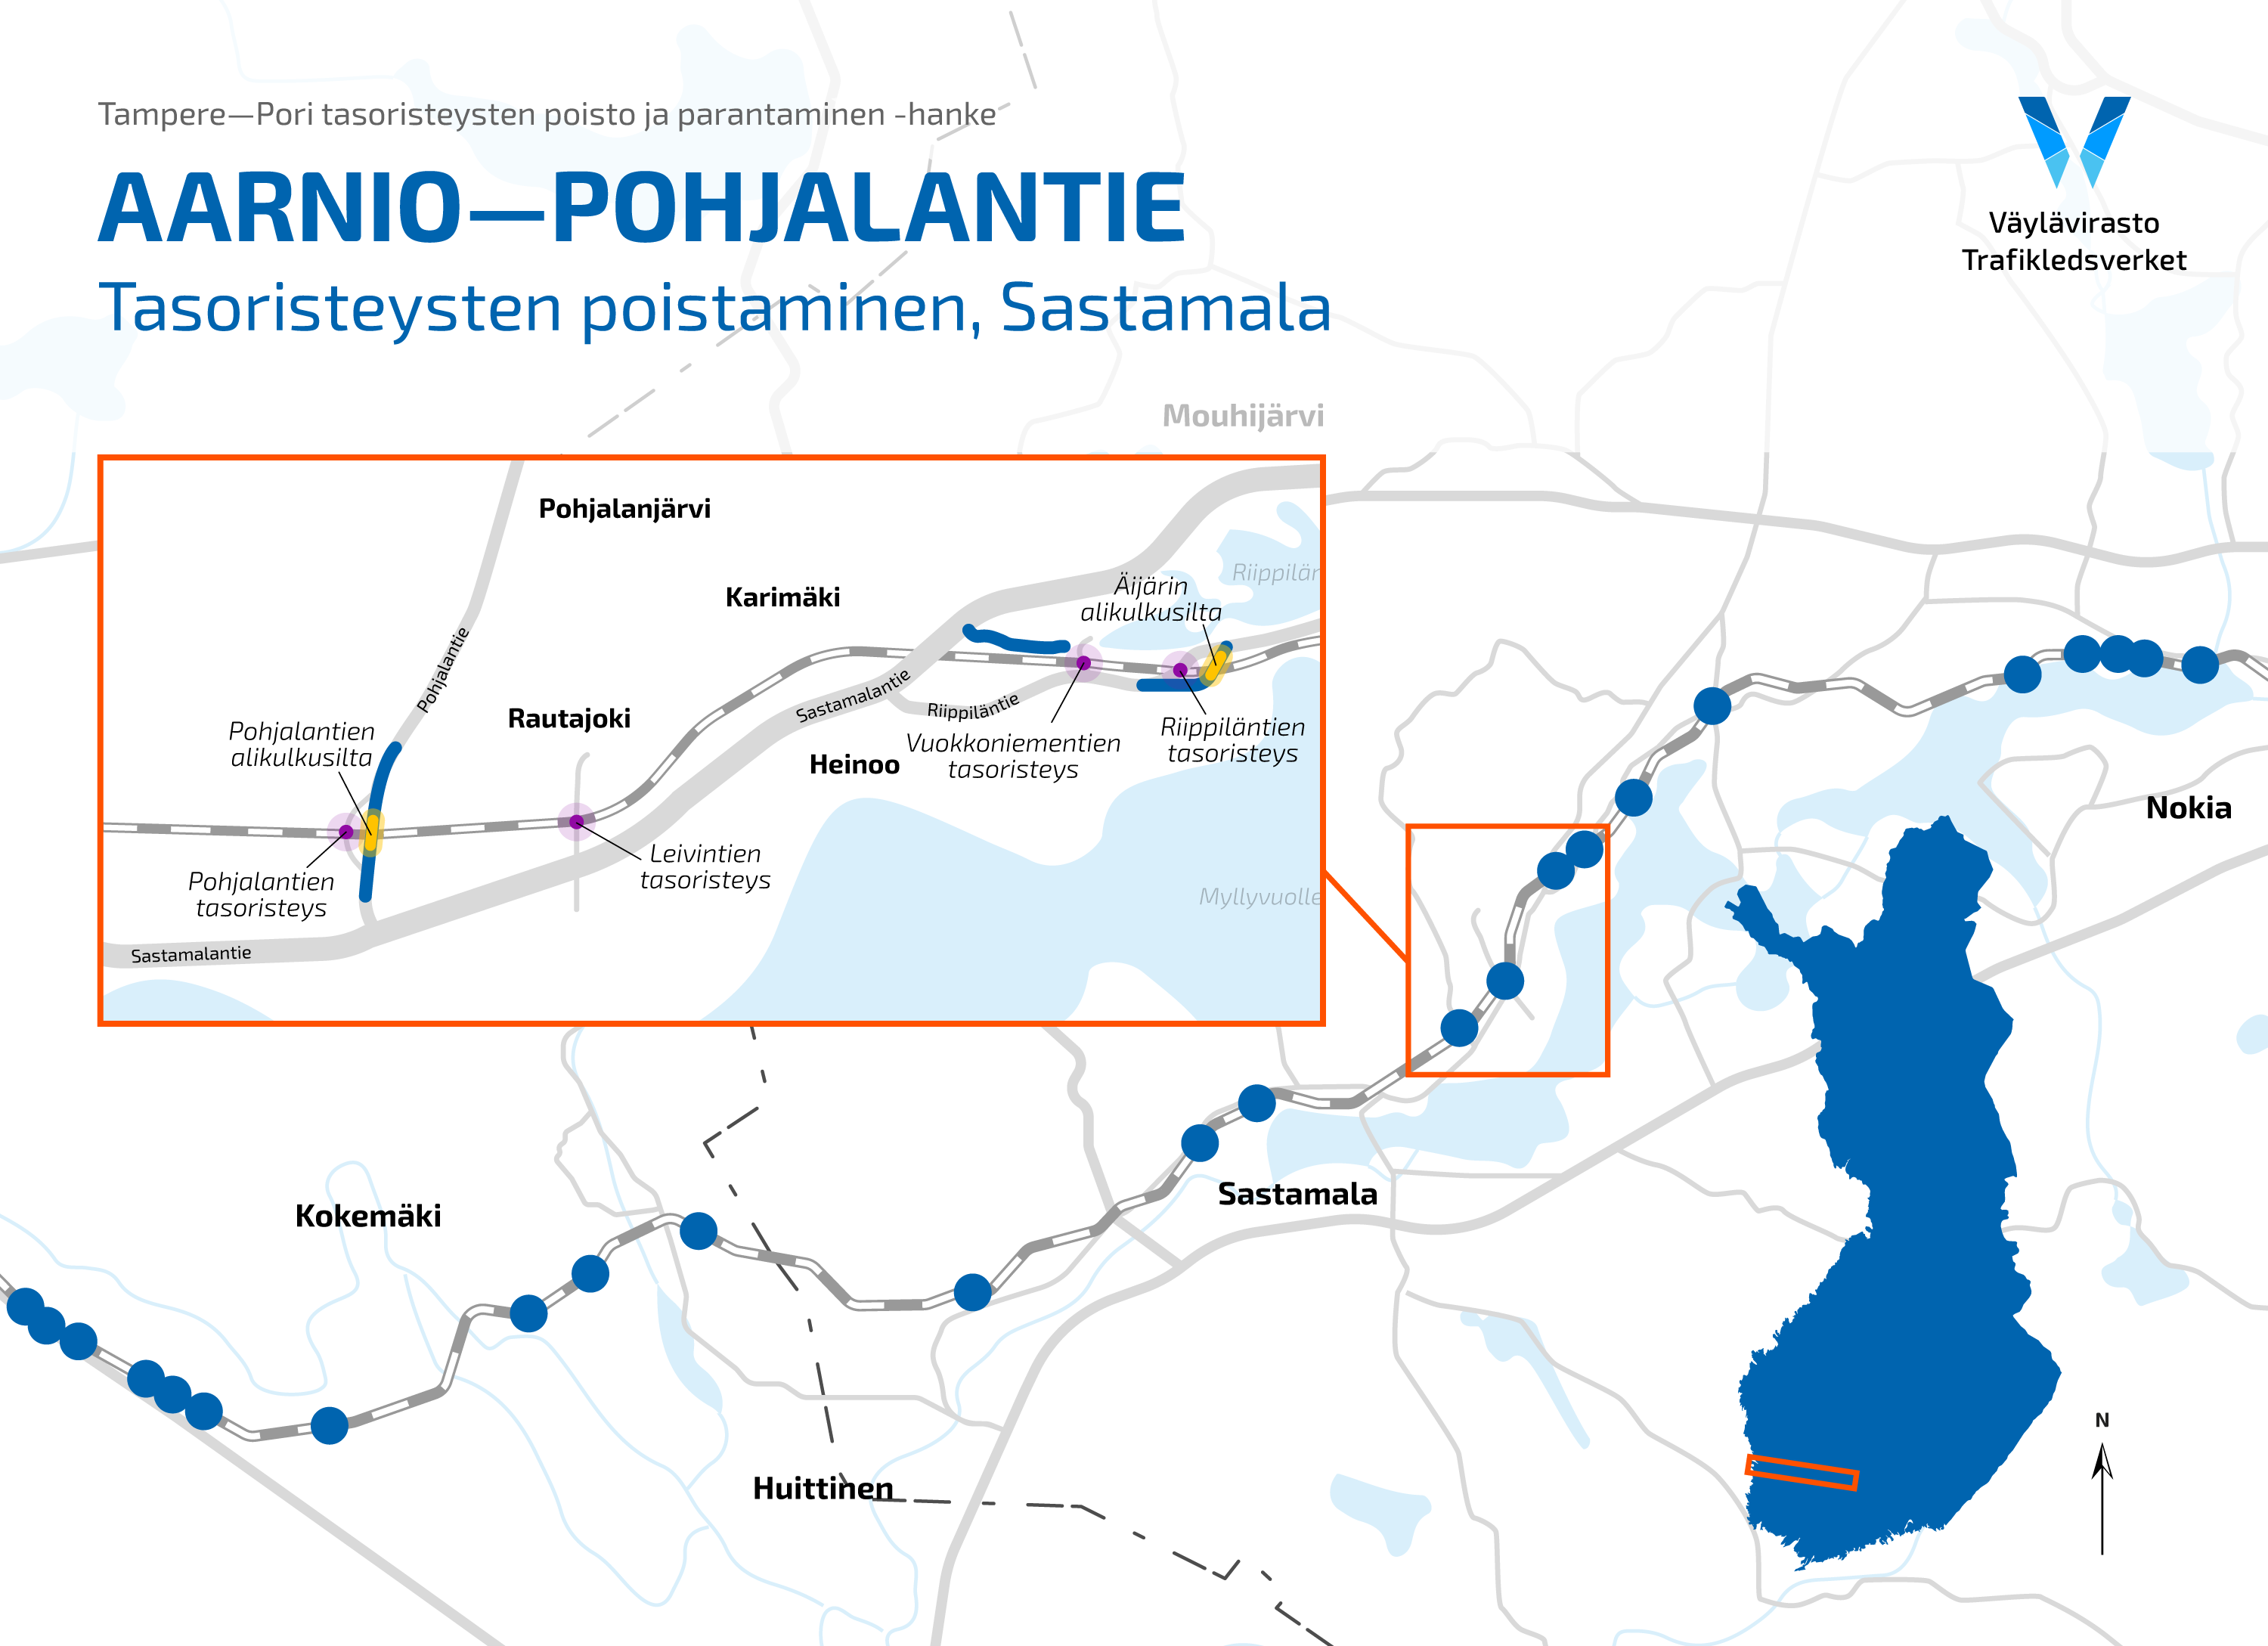 Konteksti-suunnitelmakartta Aarnio-Pohjalantie tasoristeysten poistamisesta Sastamalassa